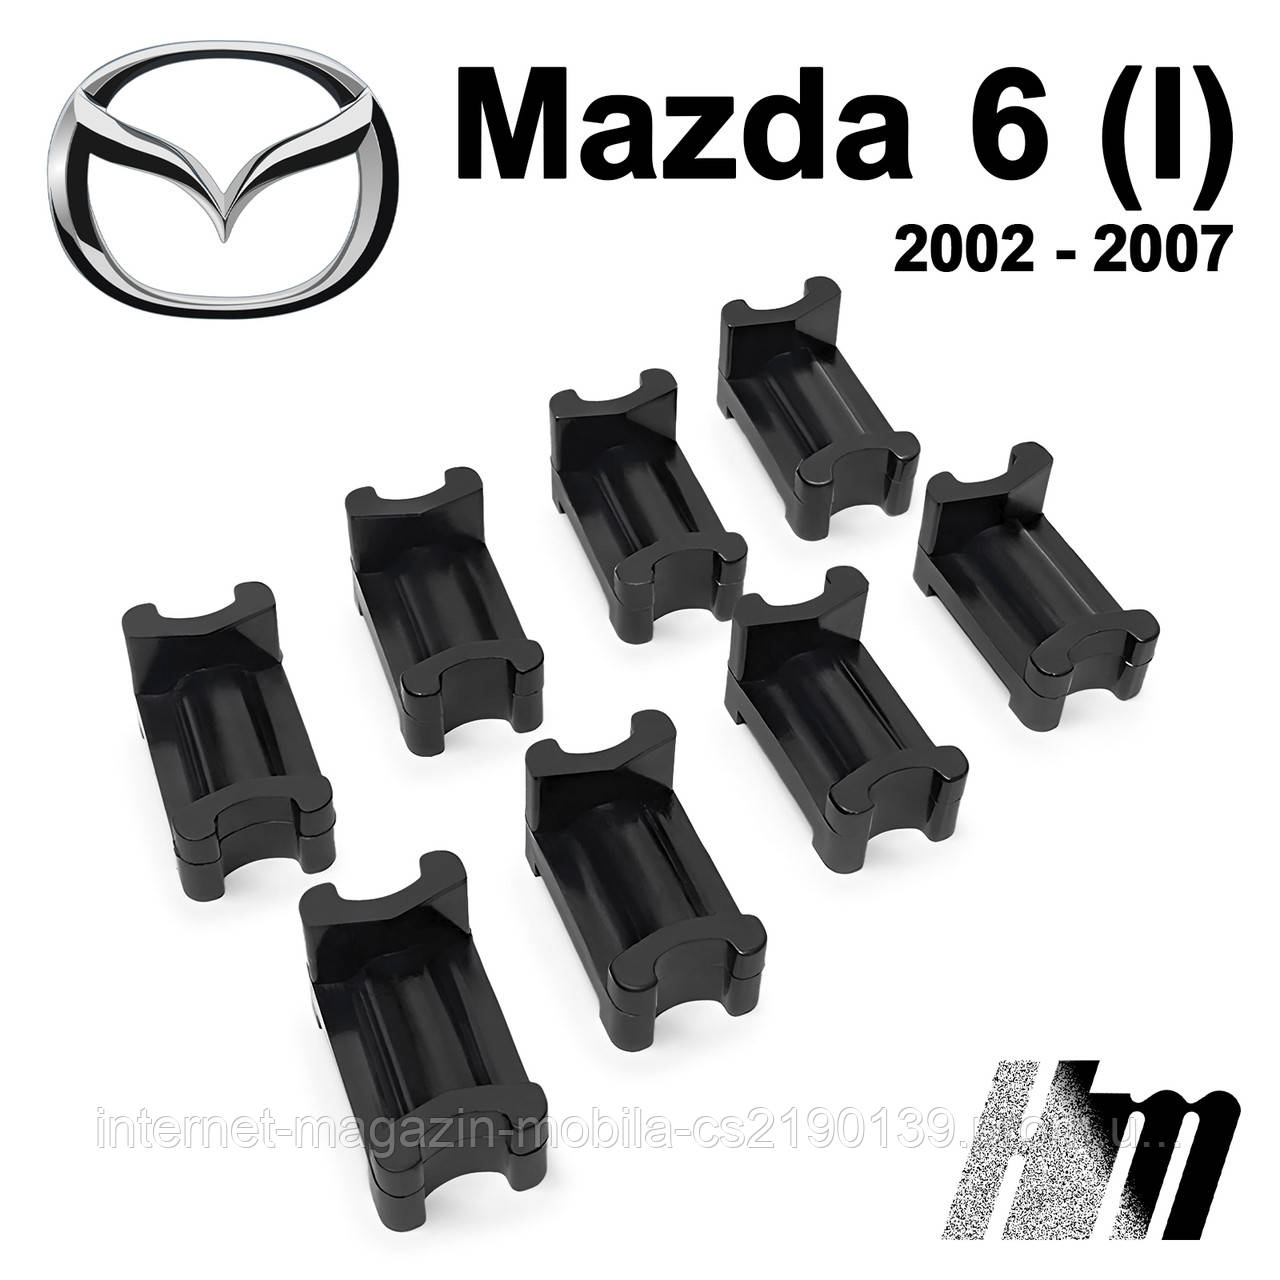 Ремкомплект обмежувача дверей Mazda 6 (I) 2002 — 2007, фіксатори, вкладки, втулки